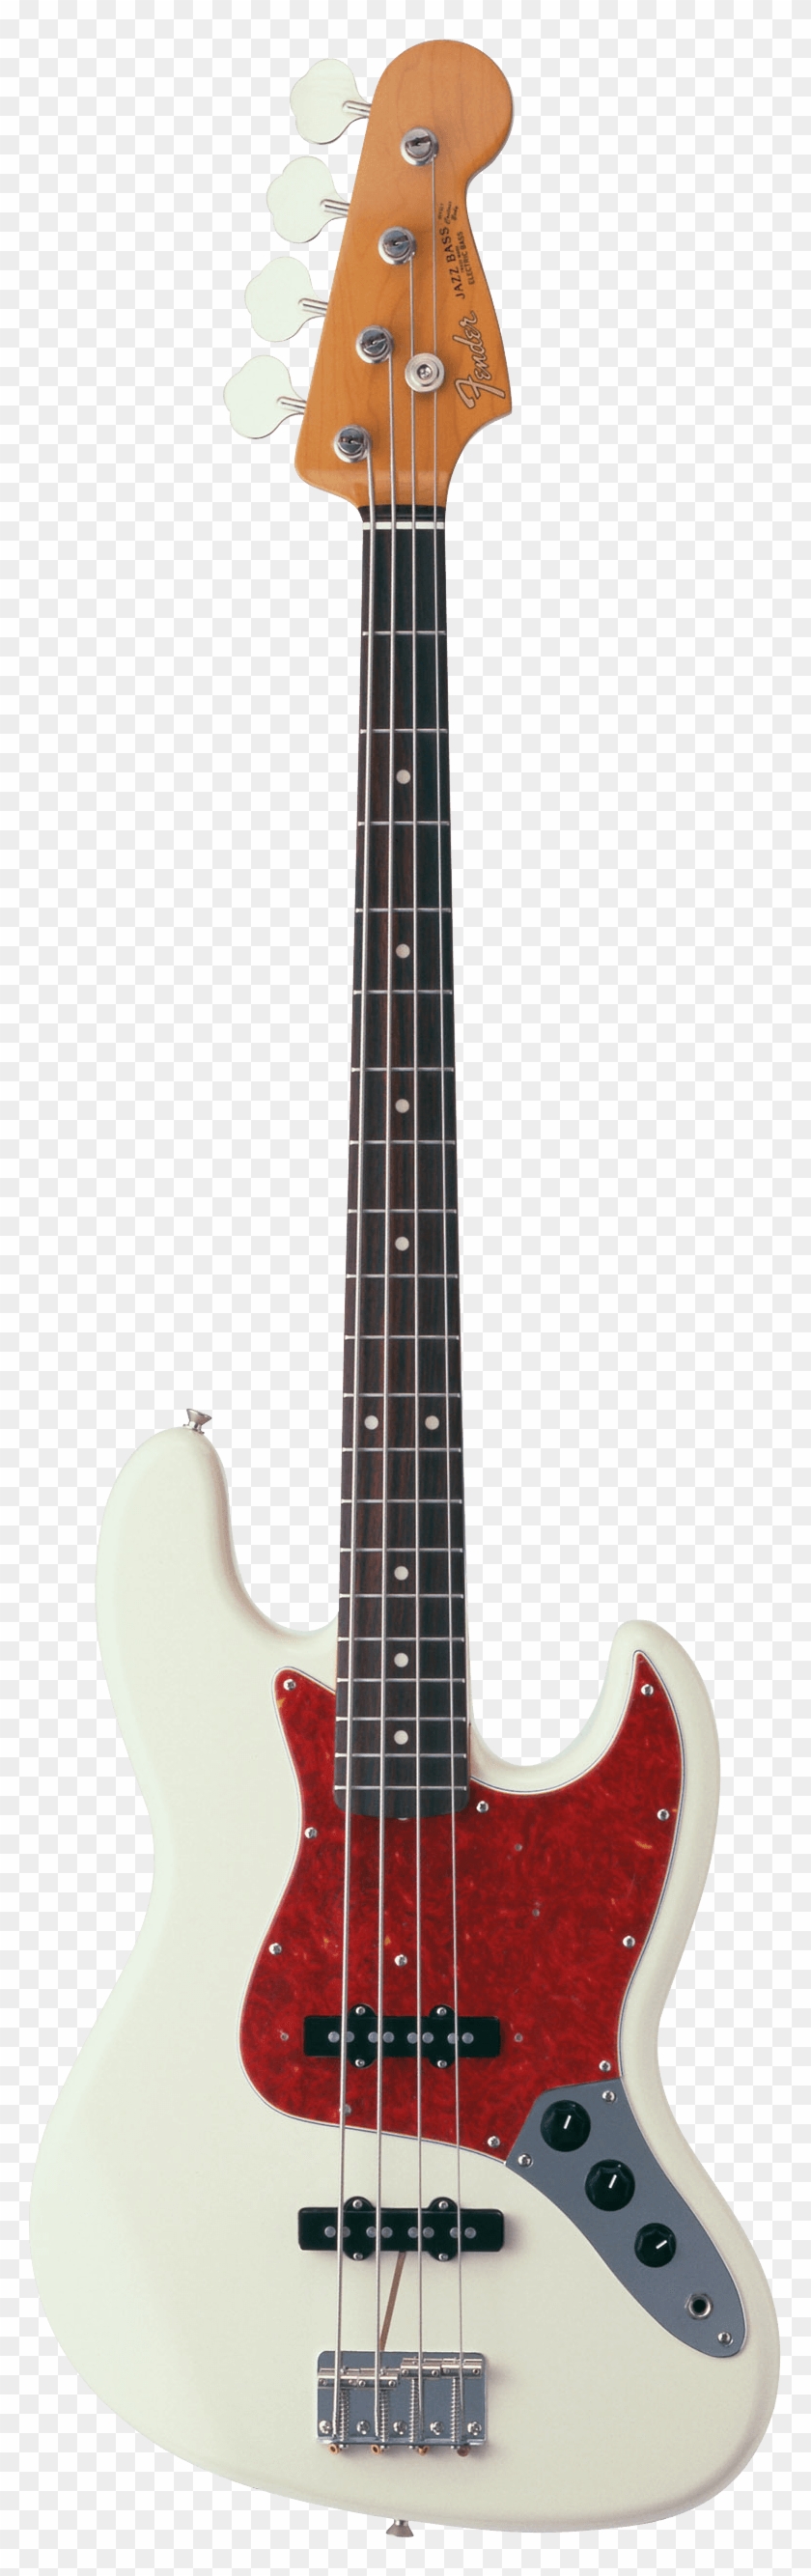 Fender Jazz Bass Guitar - Fender Jazz Bass #1013347